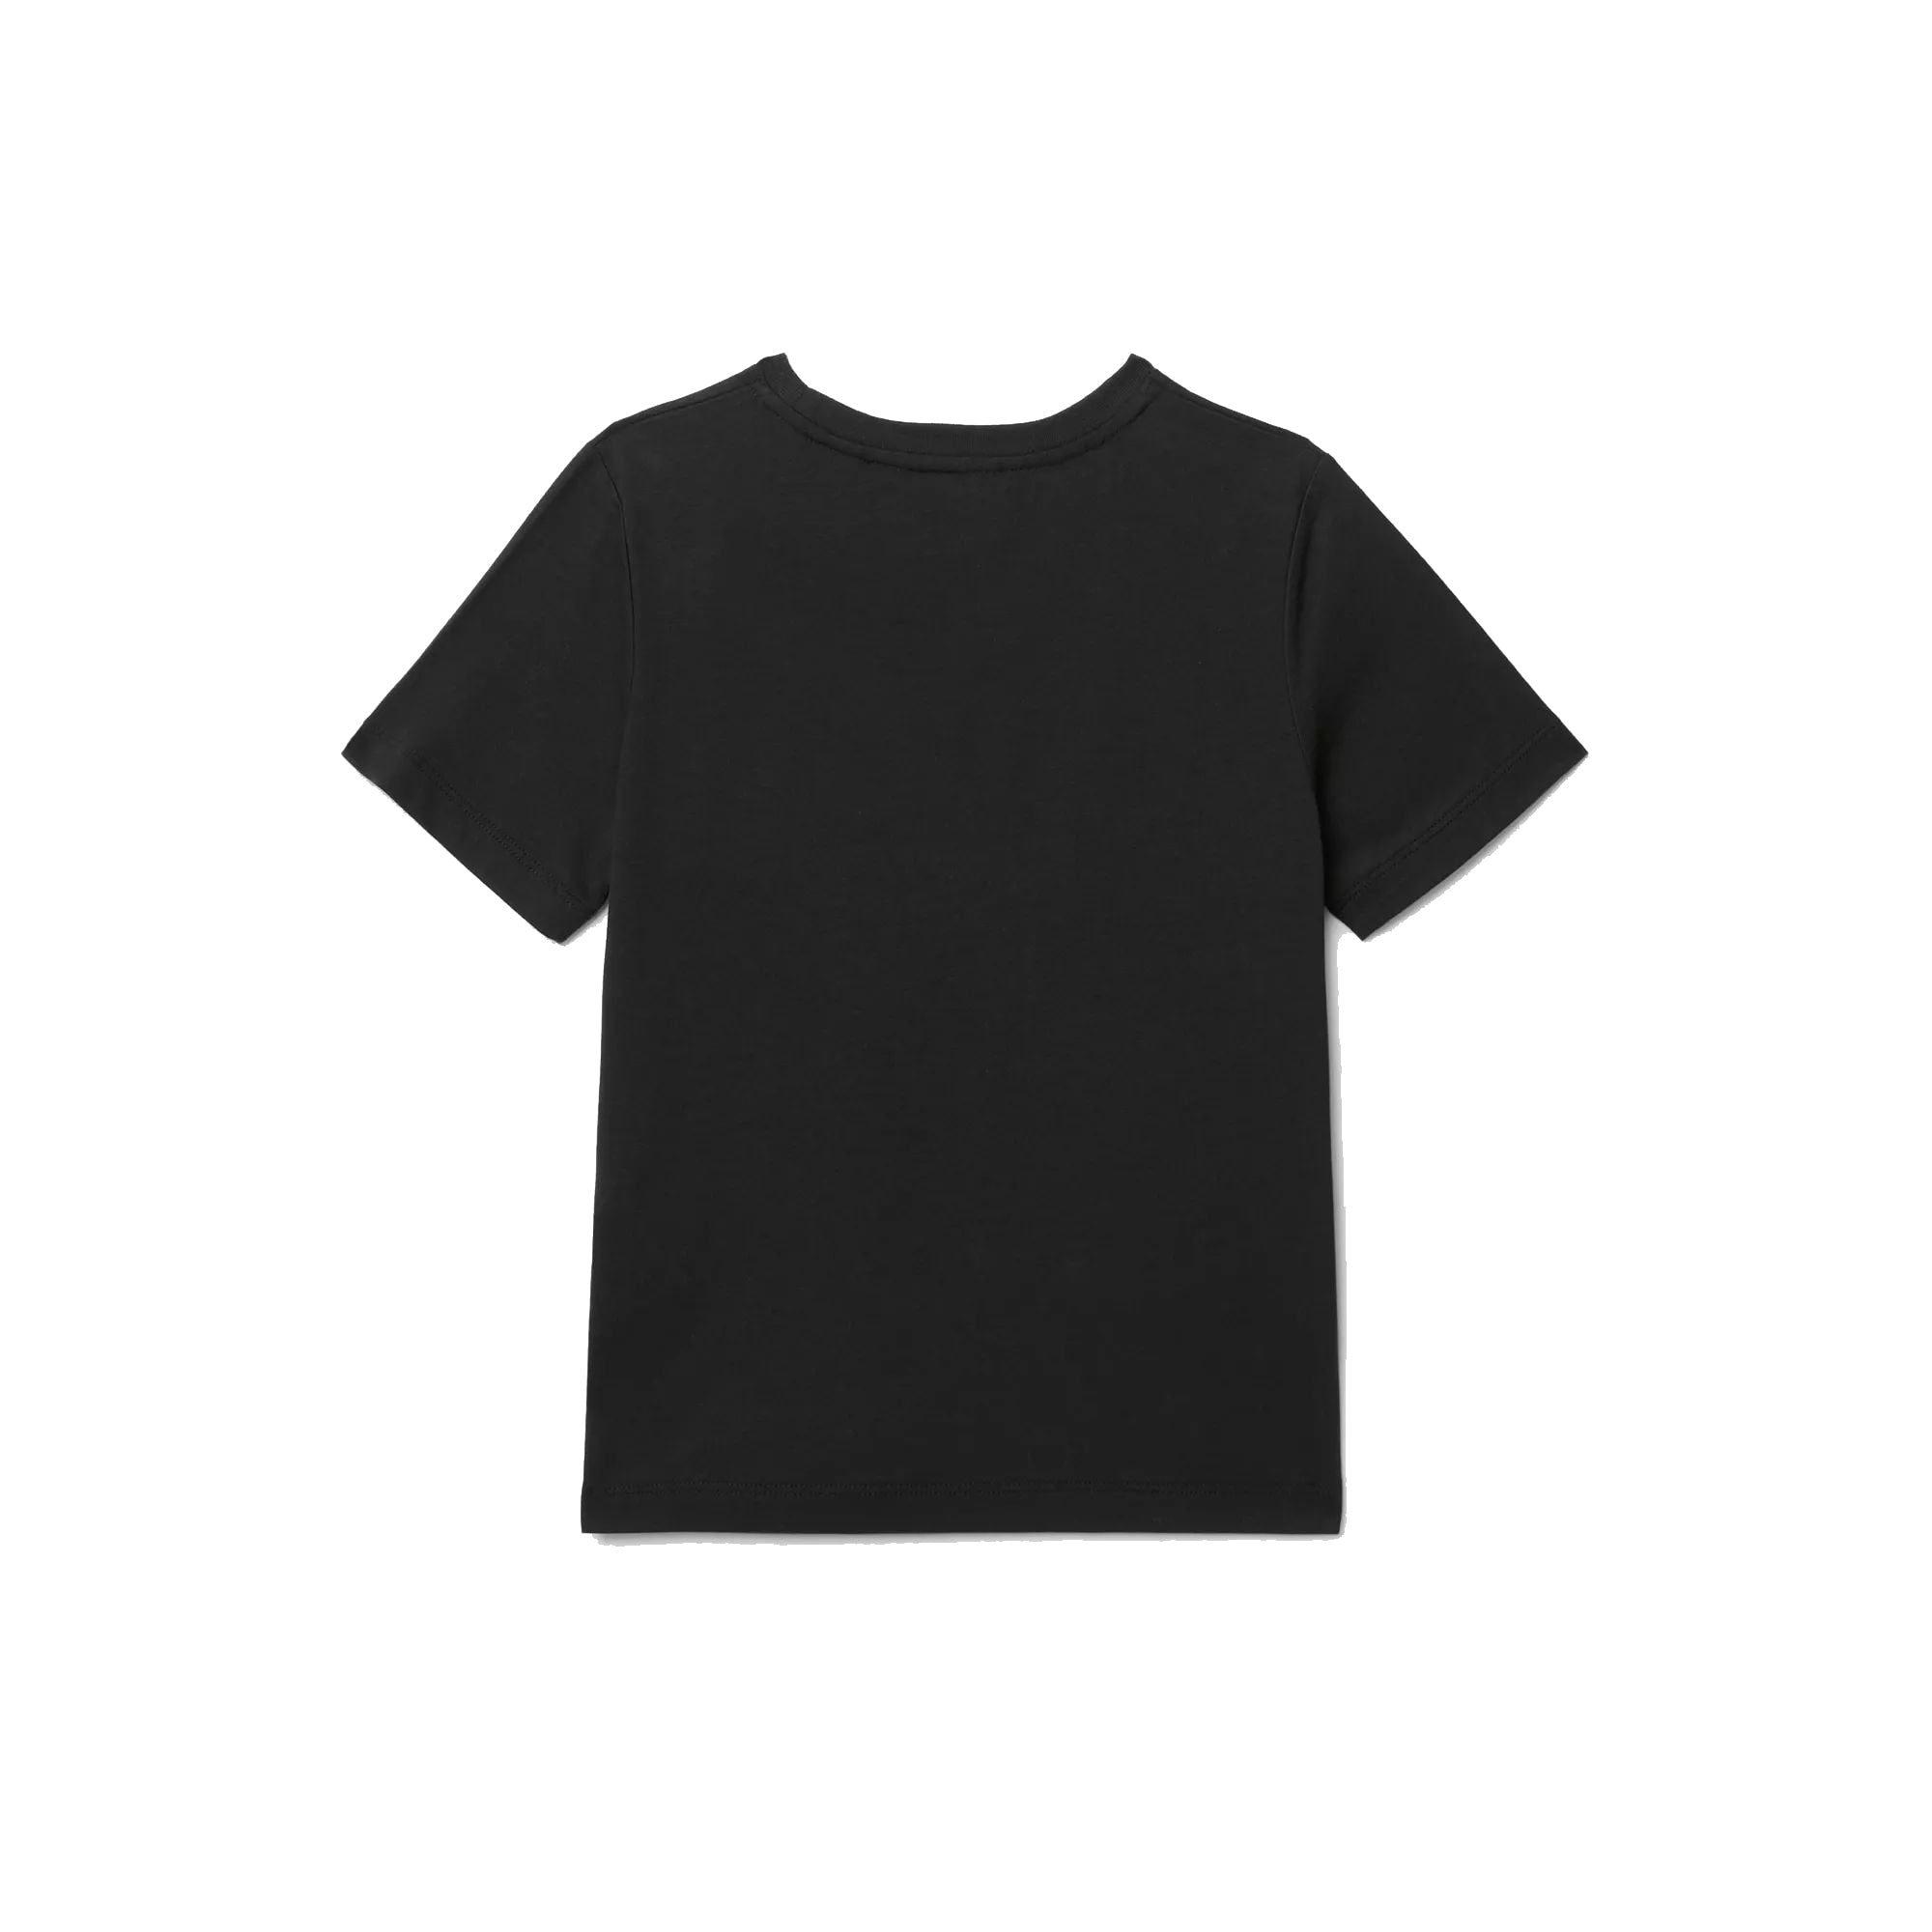 Boys Black Printing Cotton T-Shirt